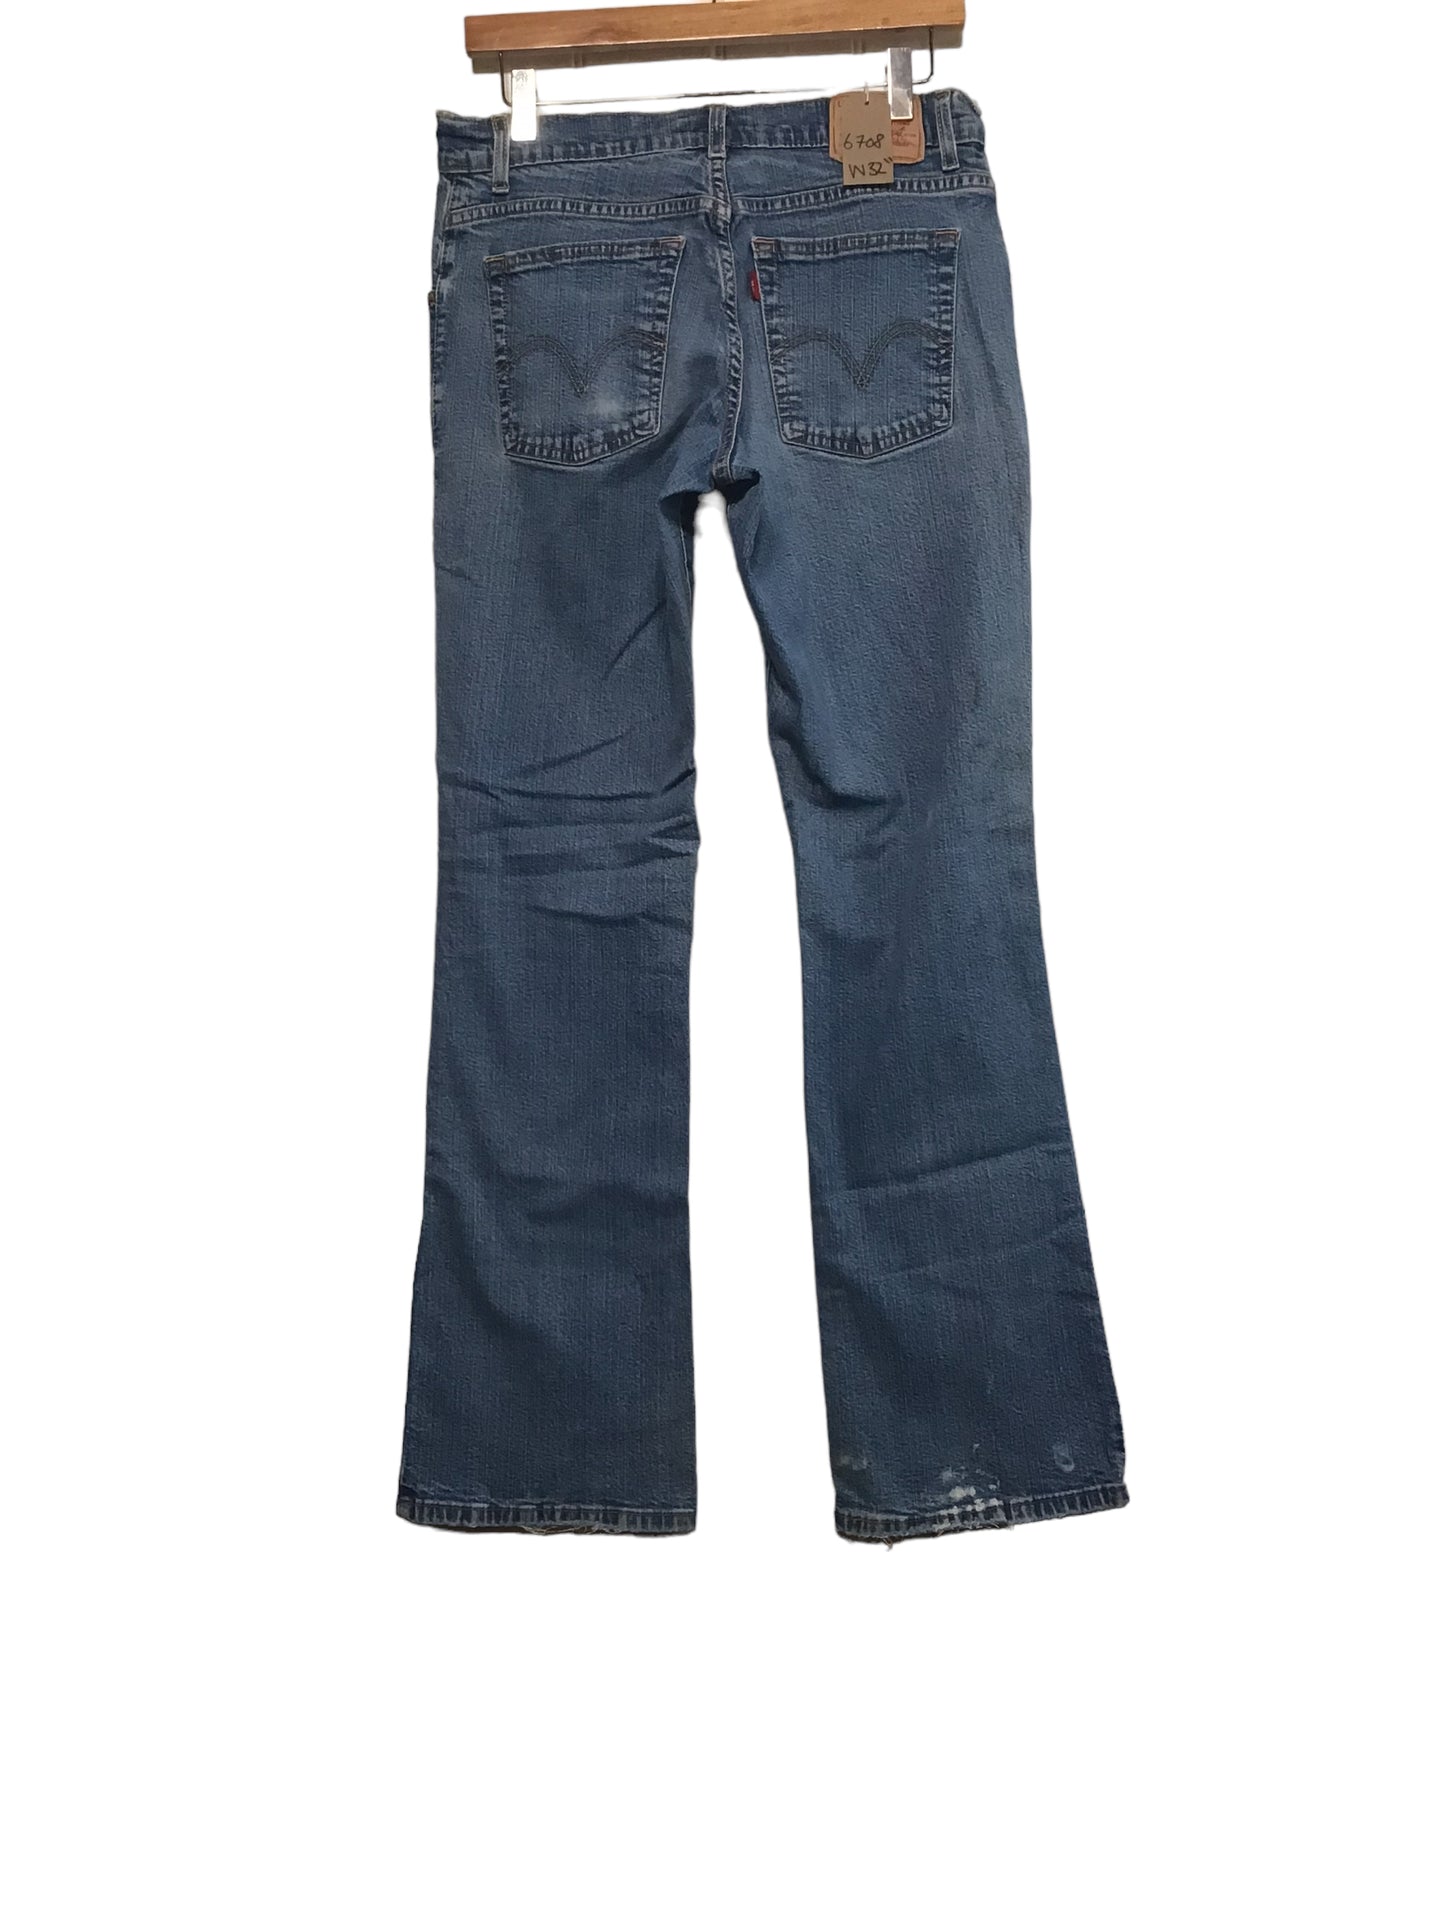 Levi Jeans (32x32)